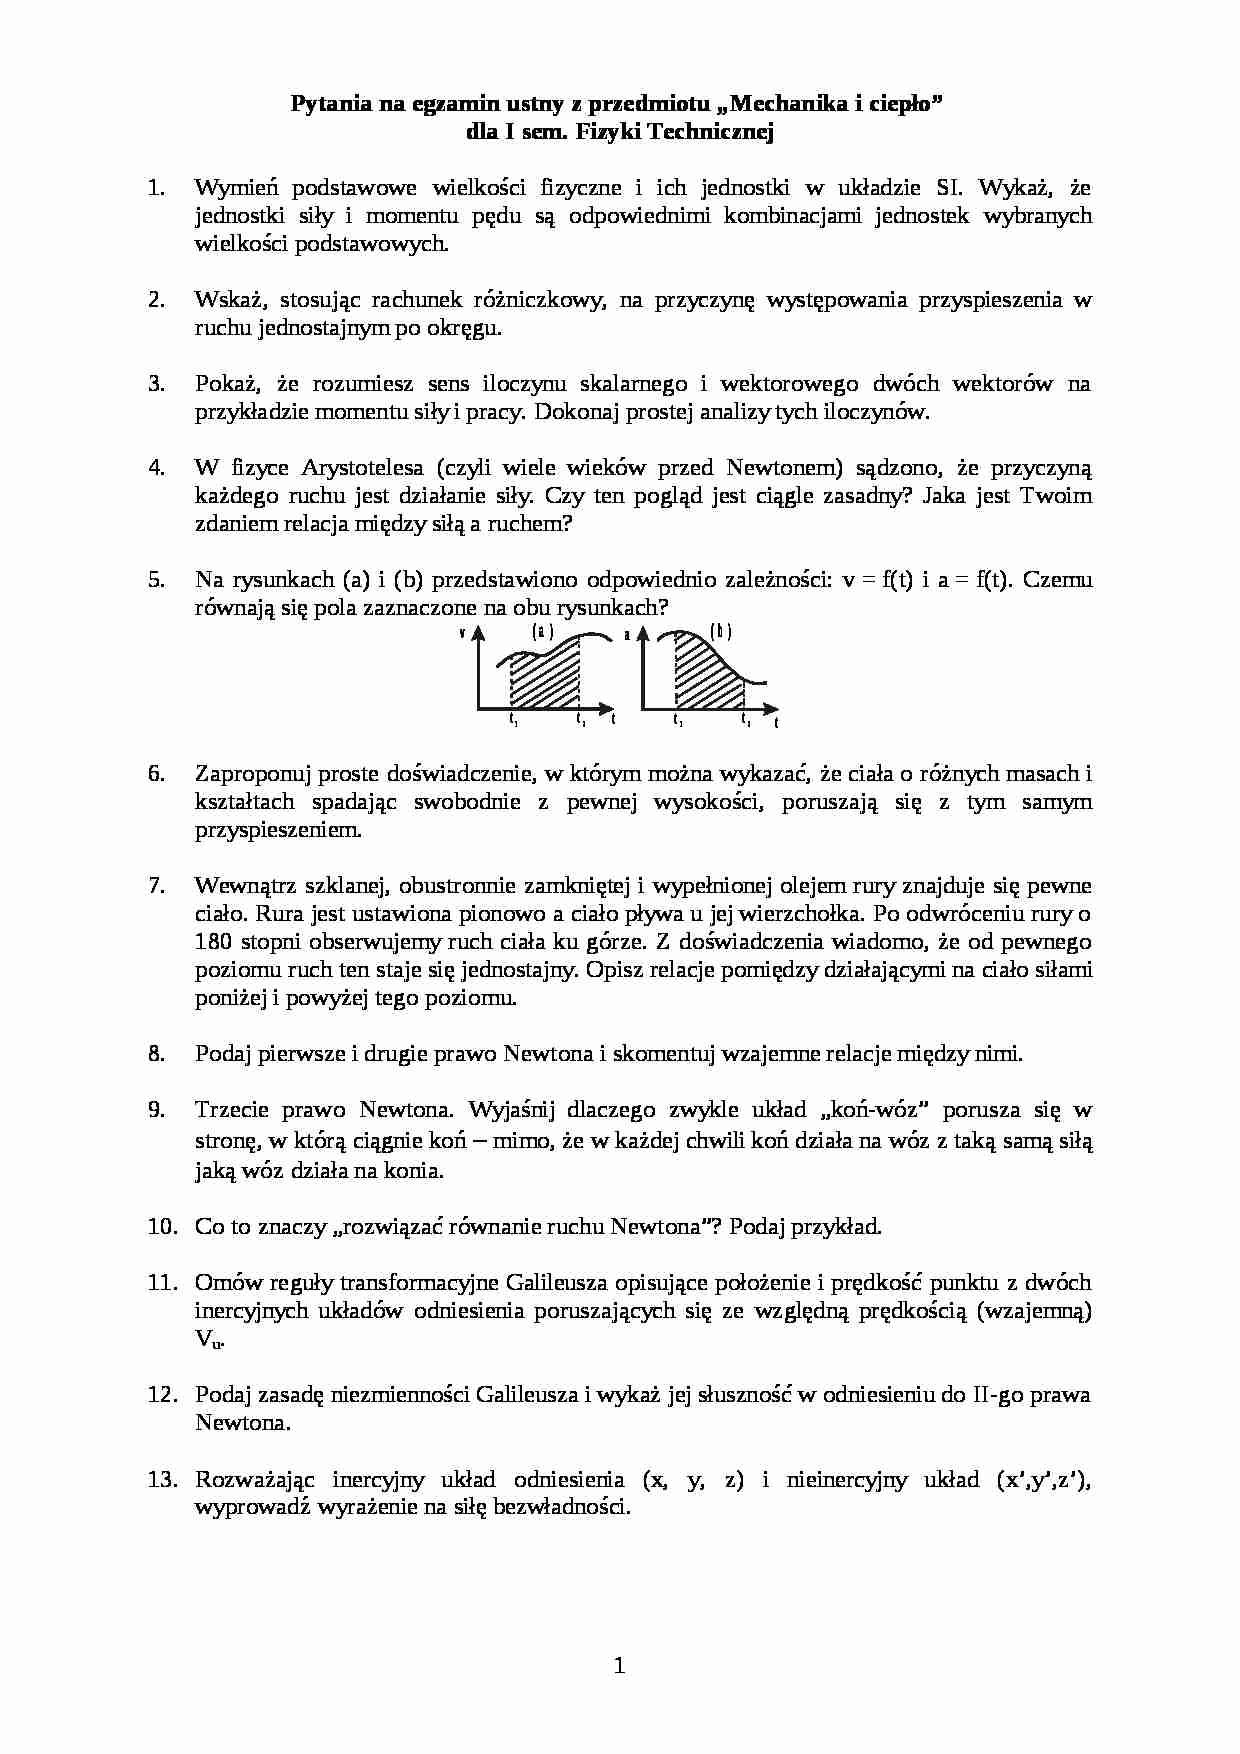 Pytania na egzamin z mechaniki i ciepła. - strona 1